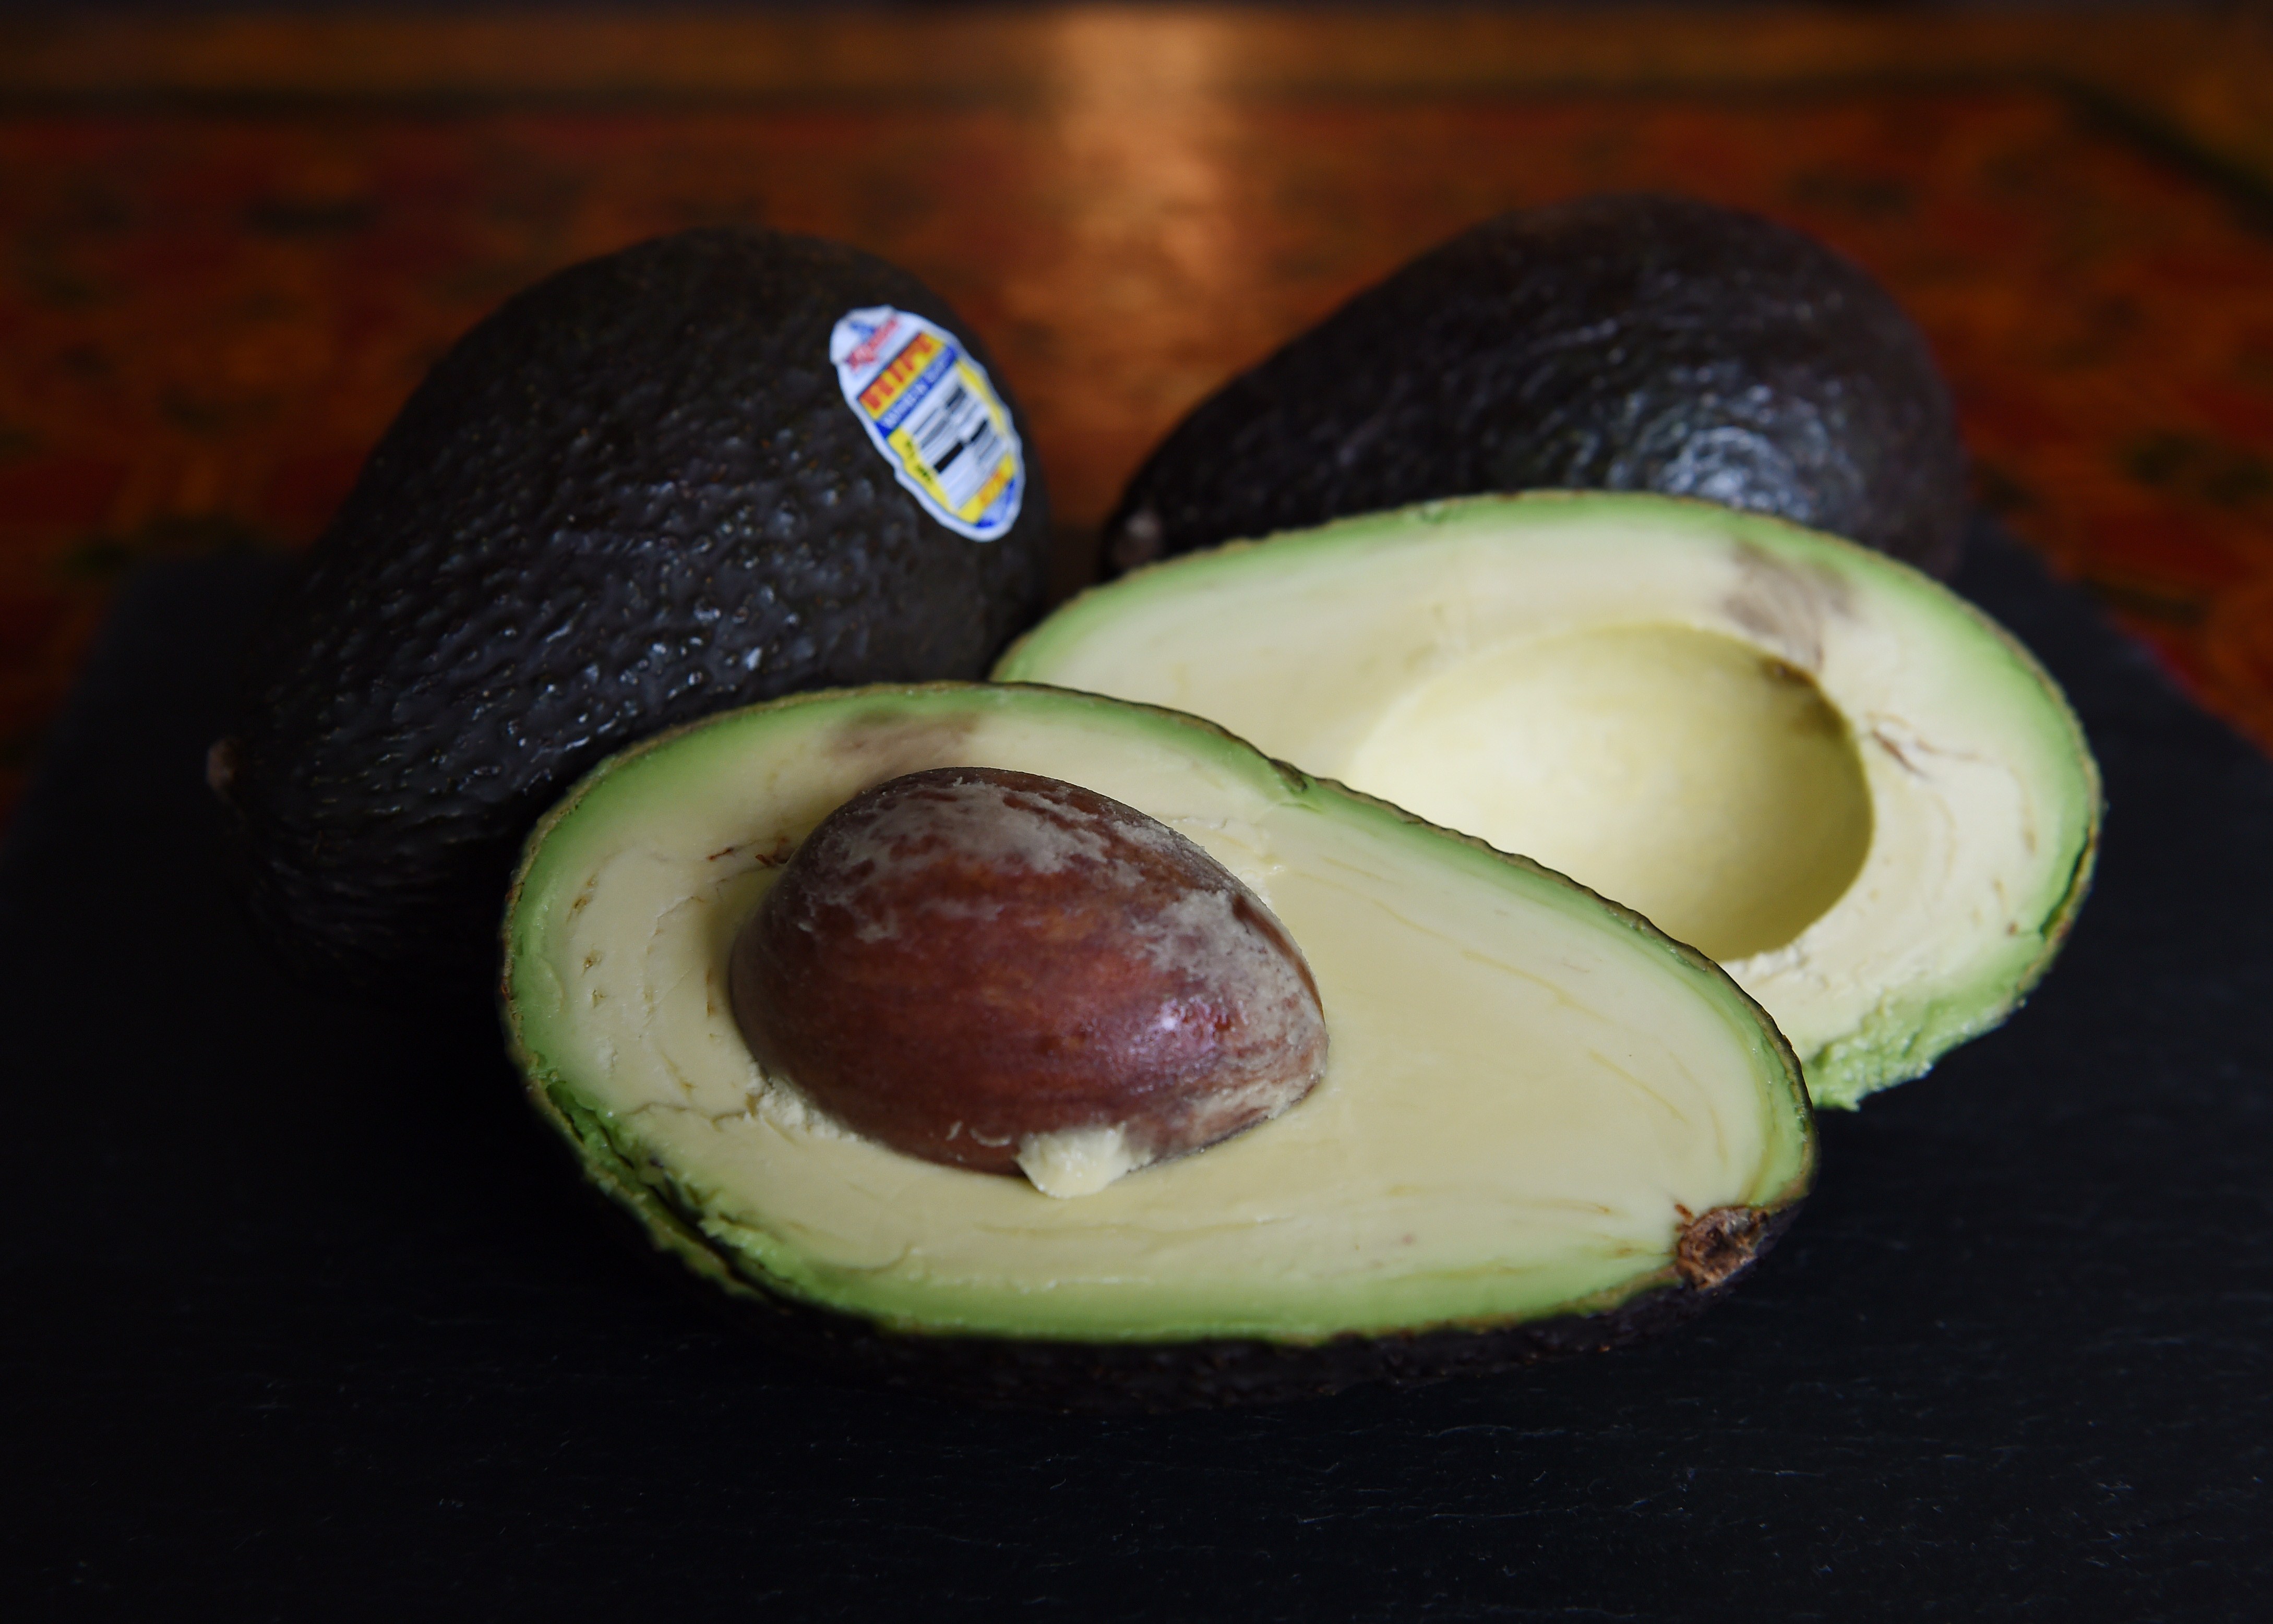 An Avocado A Day Keeps Bad Cholesterol At Bay: Study